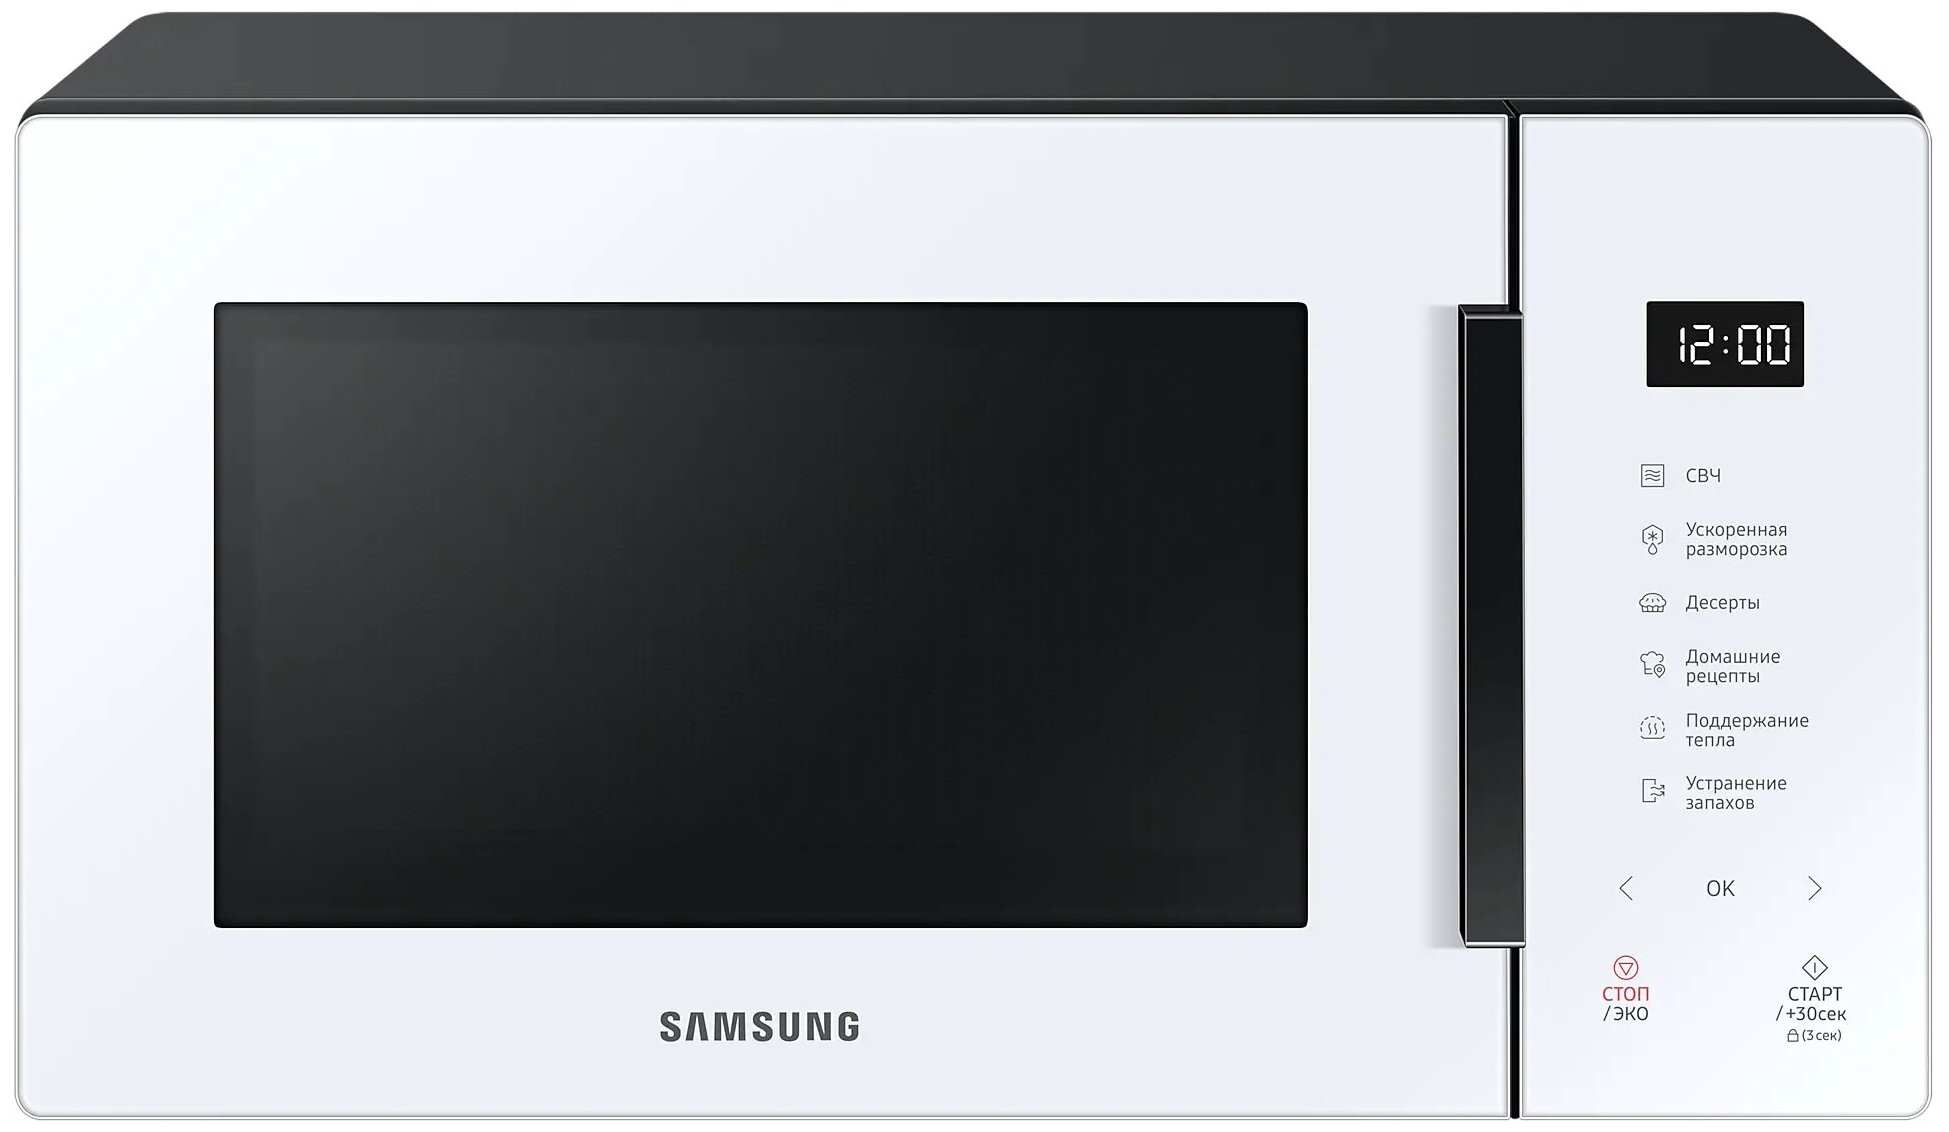 Микроволновая печь Samsung - фото №1